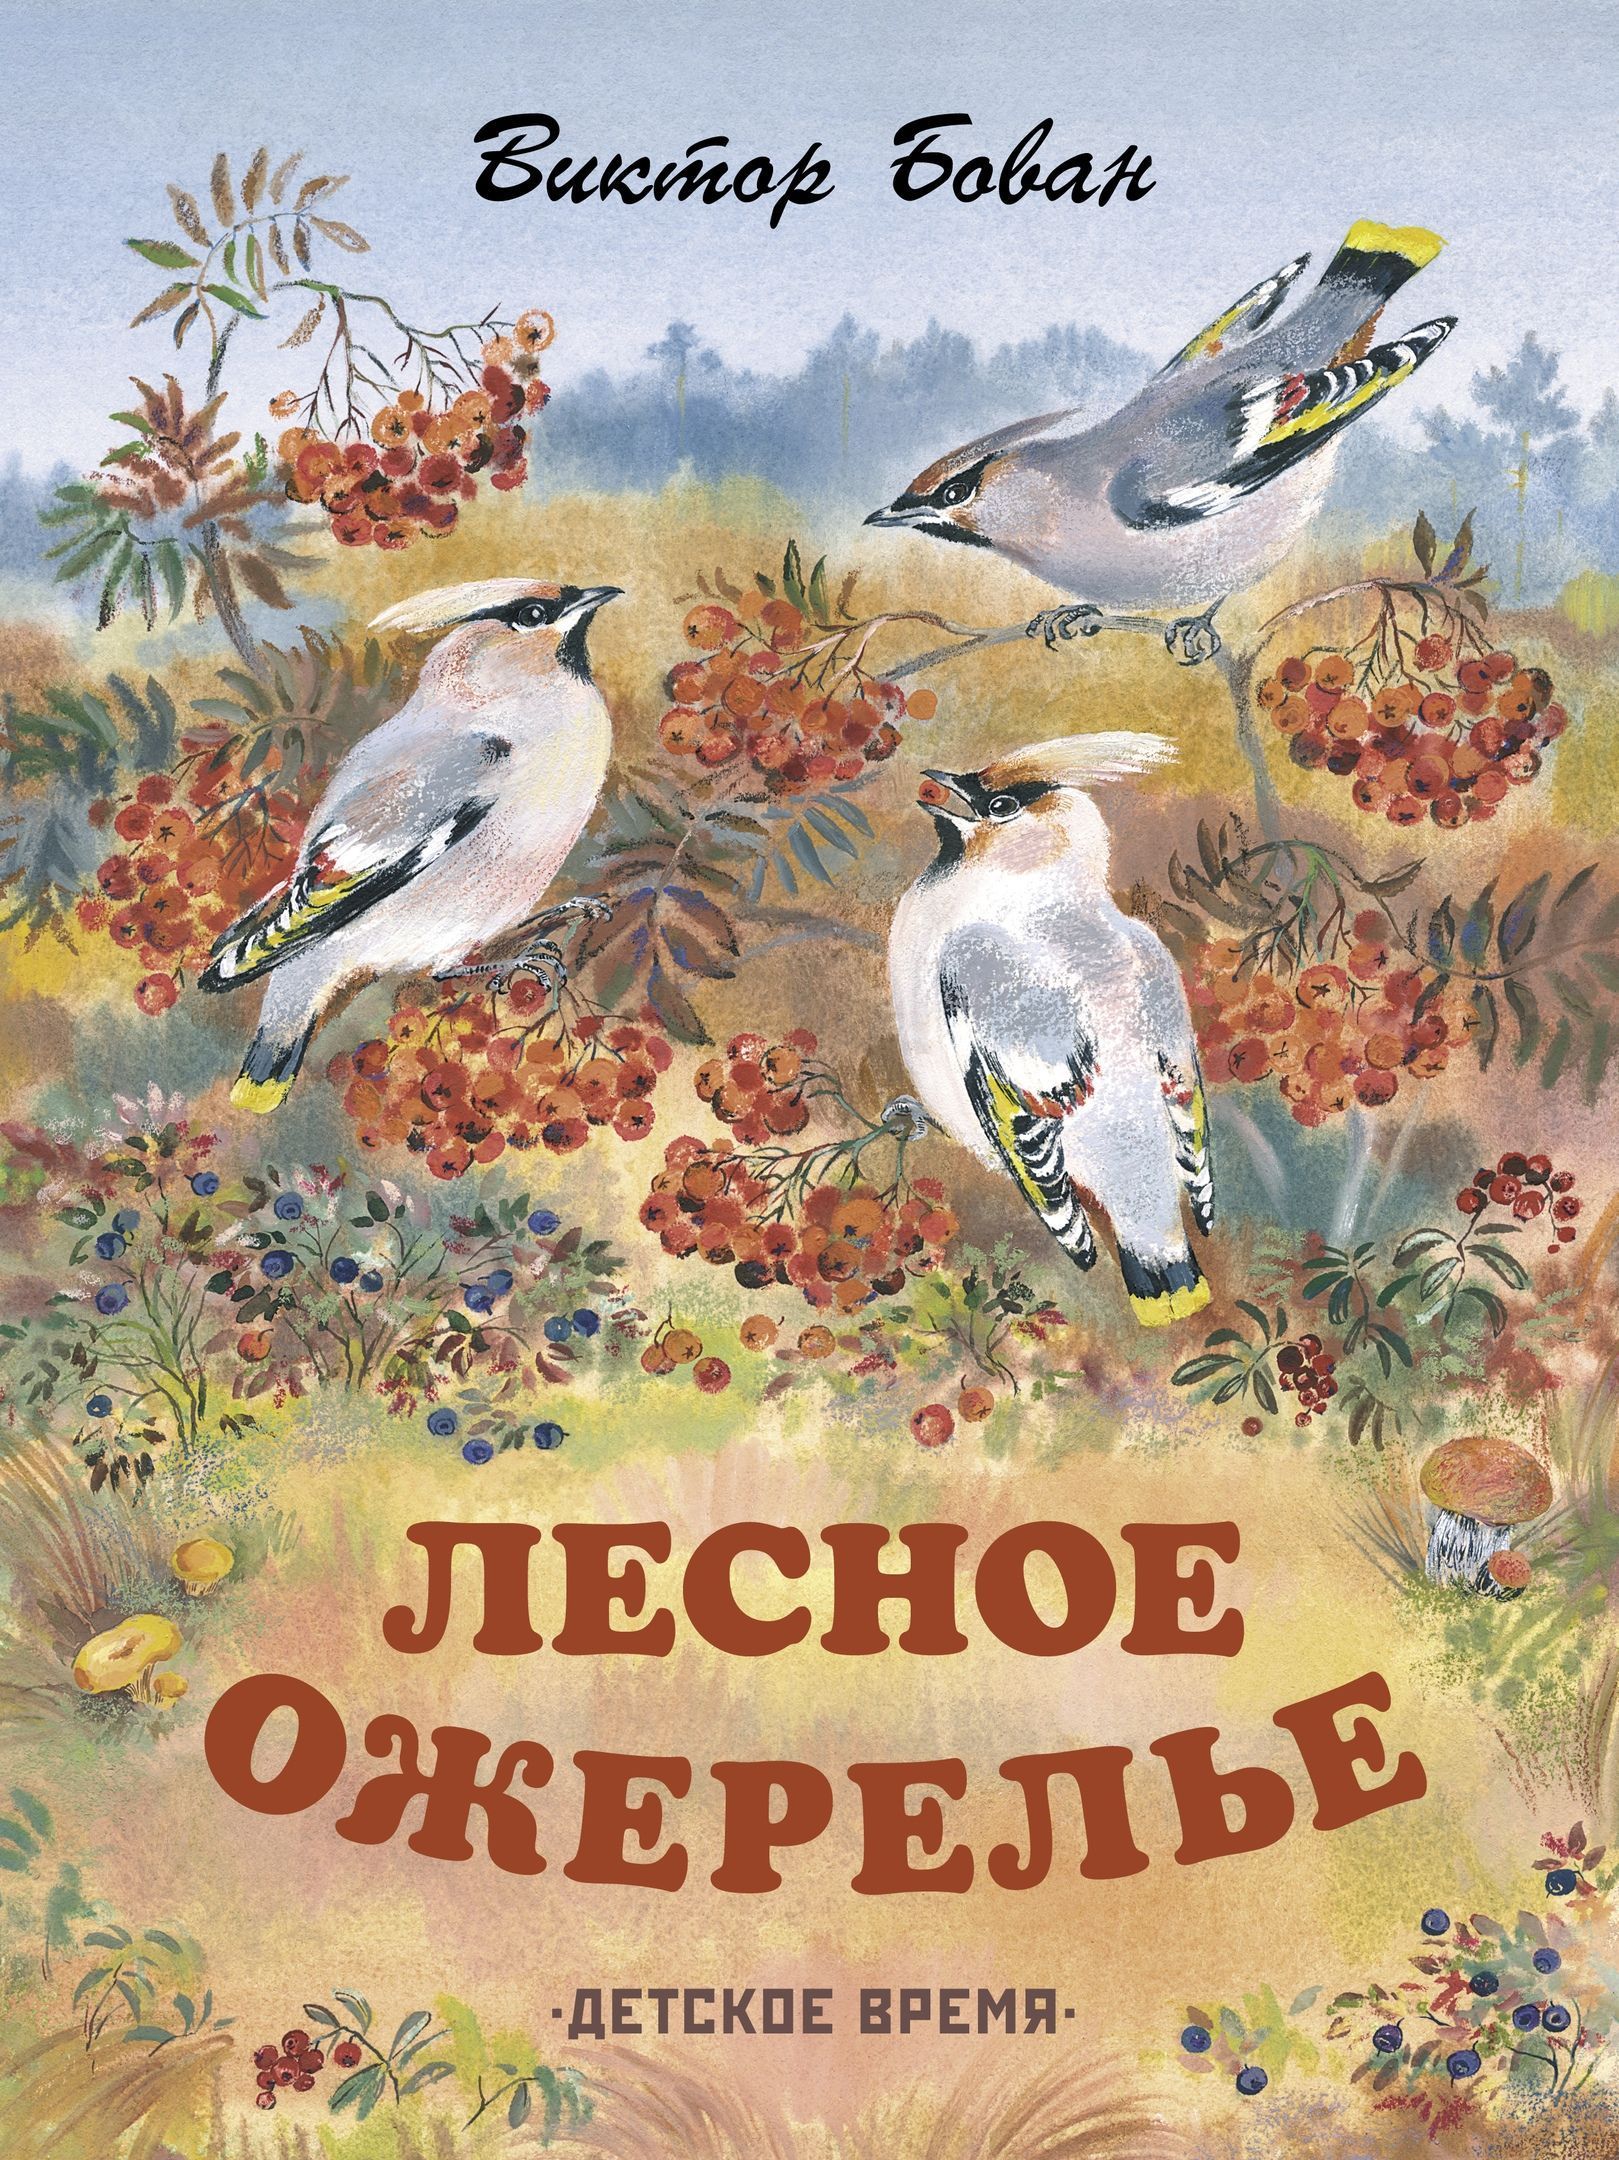 Название произведений о природе. Обложка книги о природе. Рассказы о природе для детей. Книги о природе для детей.